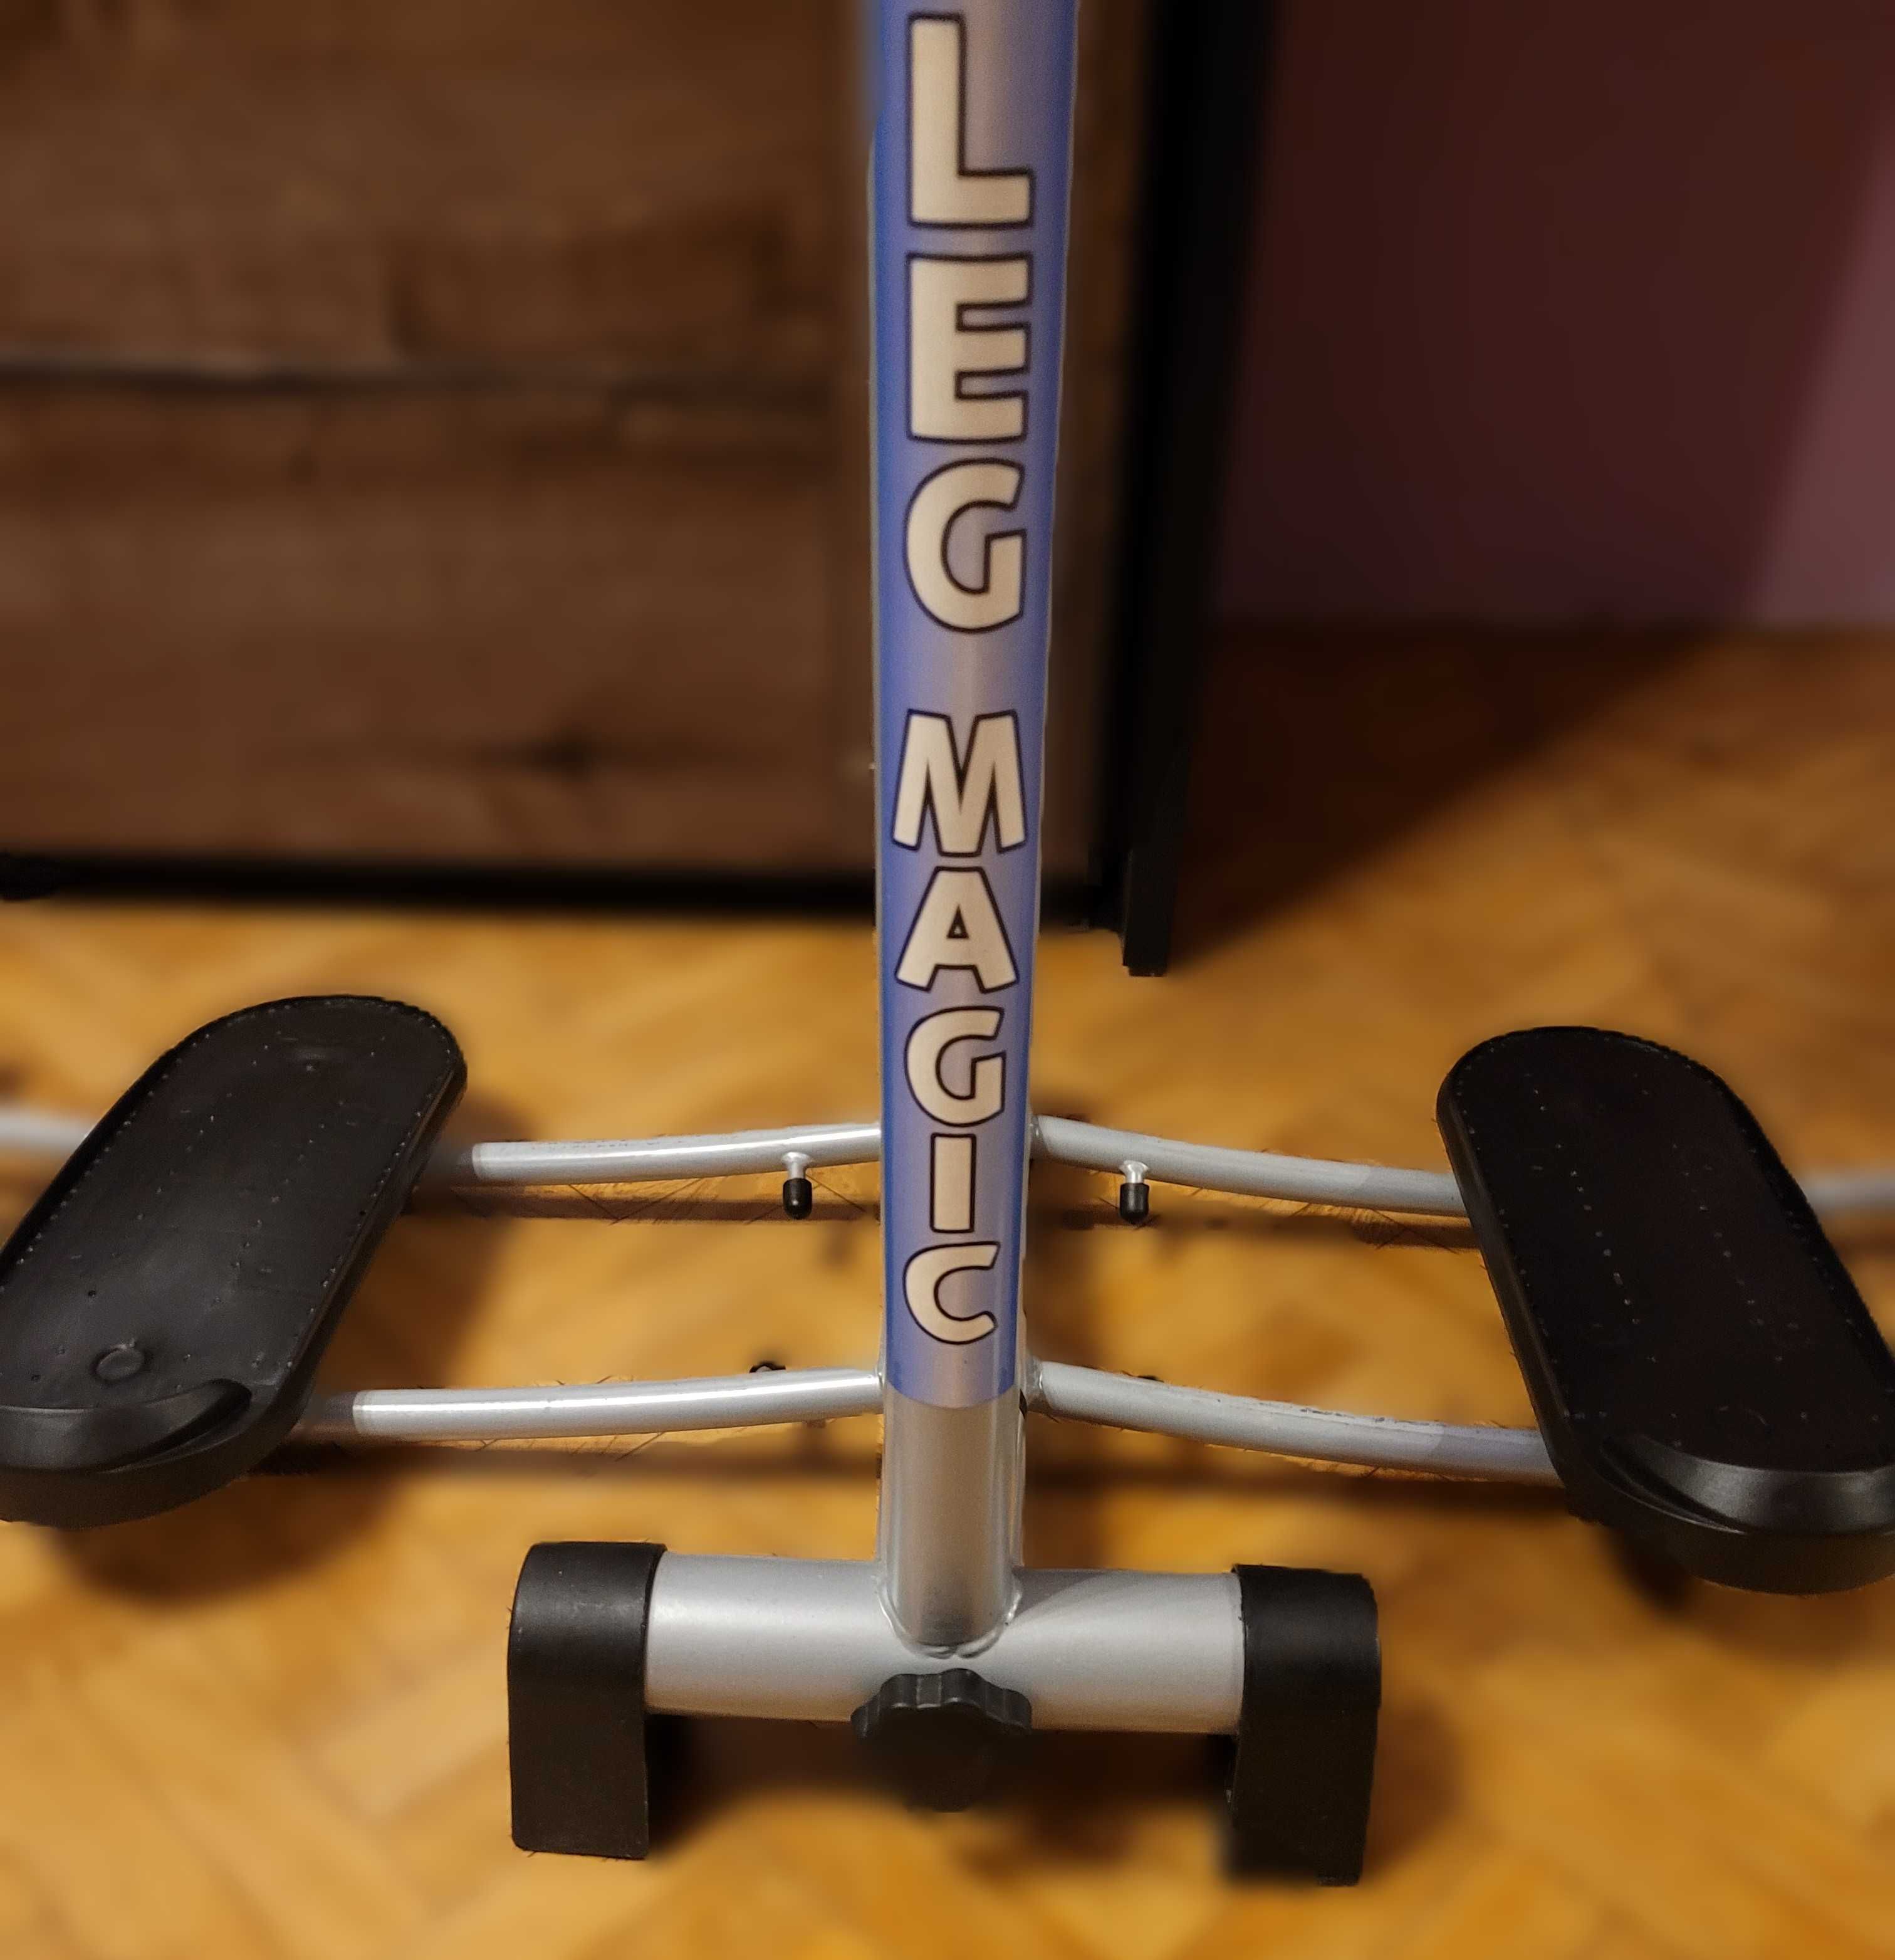 LEG MAGIC X – LEG MASTER przyrząd do ćwiczeń nóg